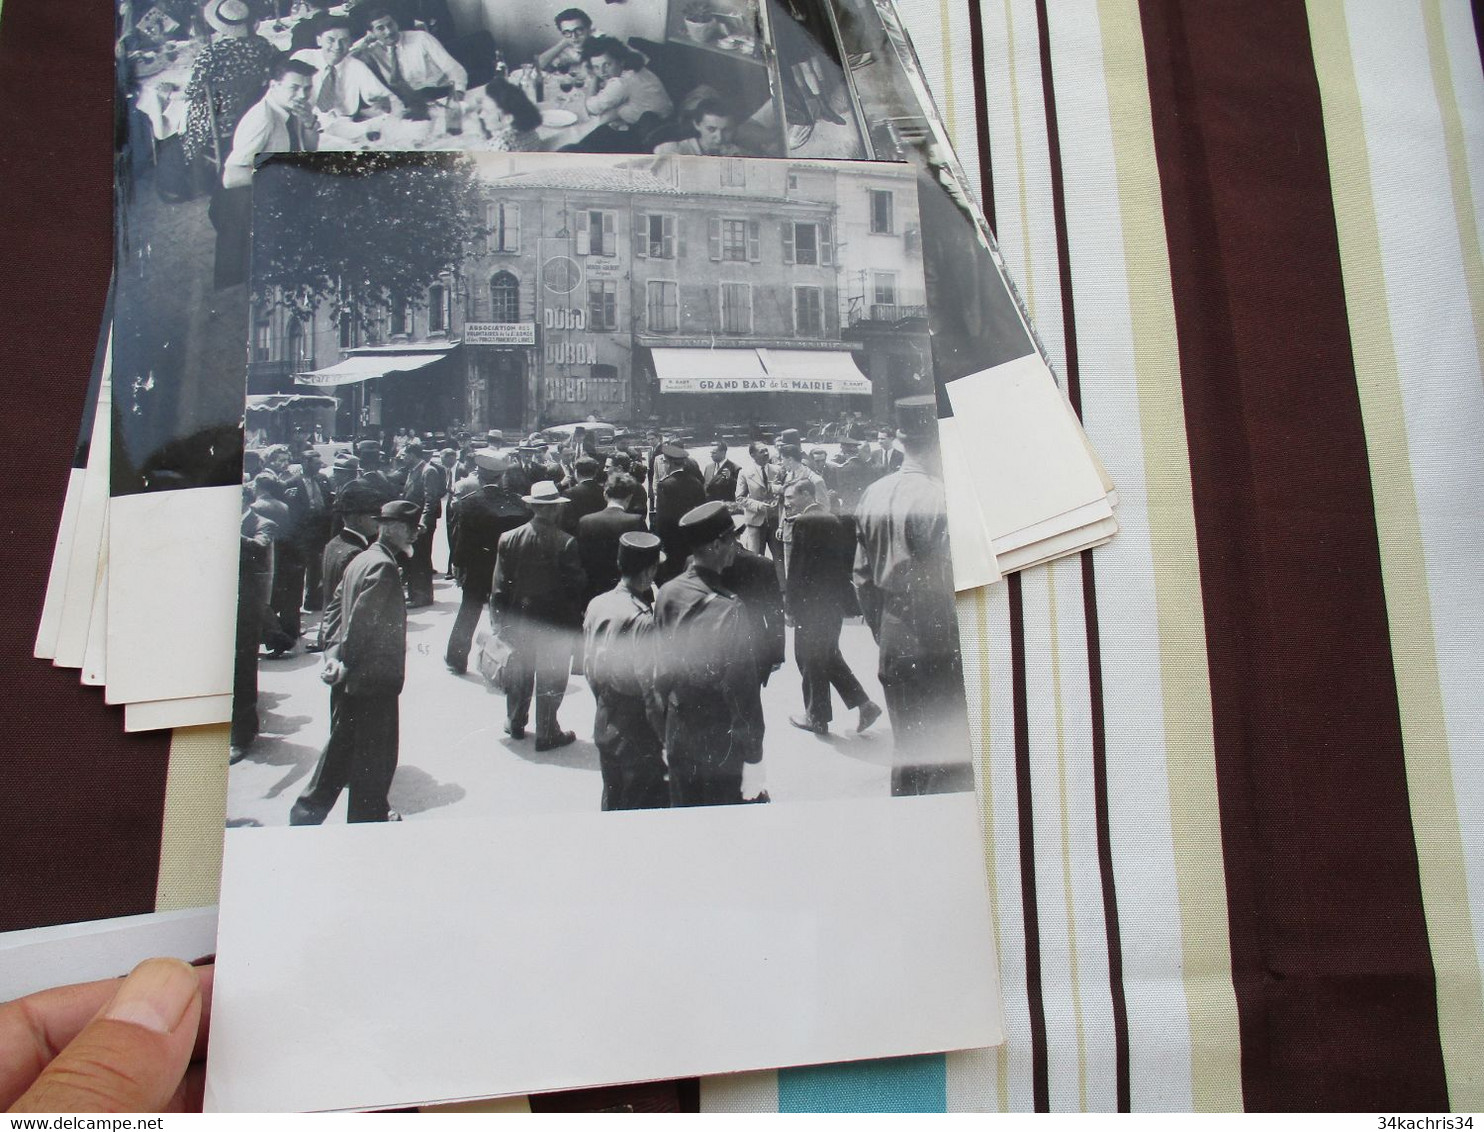 Congrès Séricicole Soie Alès Alais 194 + de 60 photos originales Desprats 18 X 24 environs cachet photographe au dos